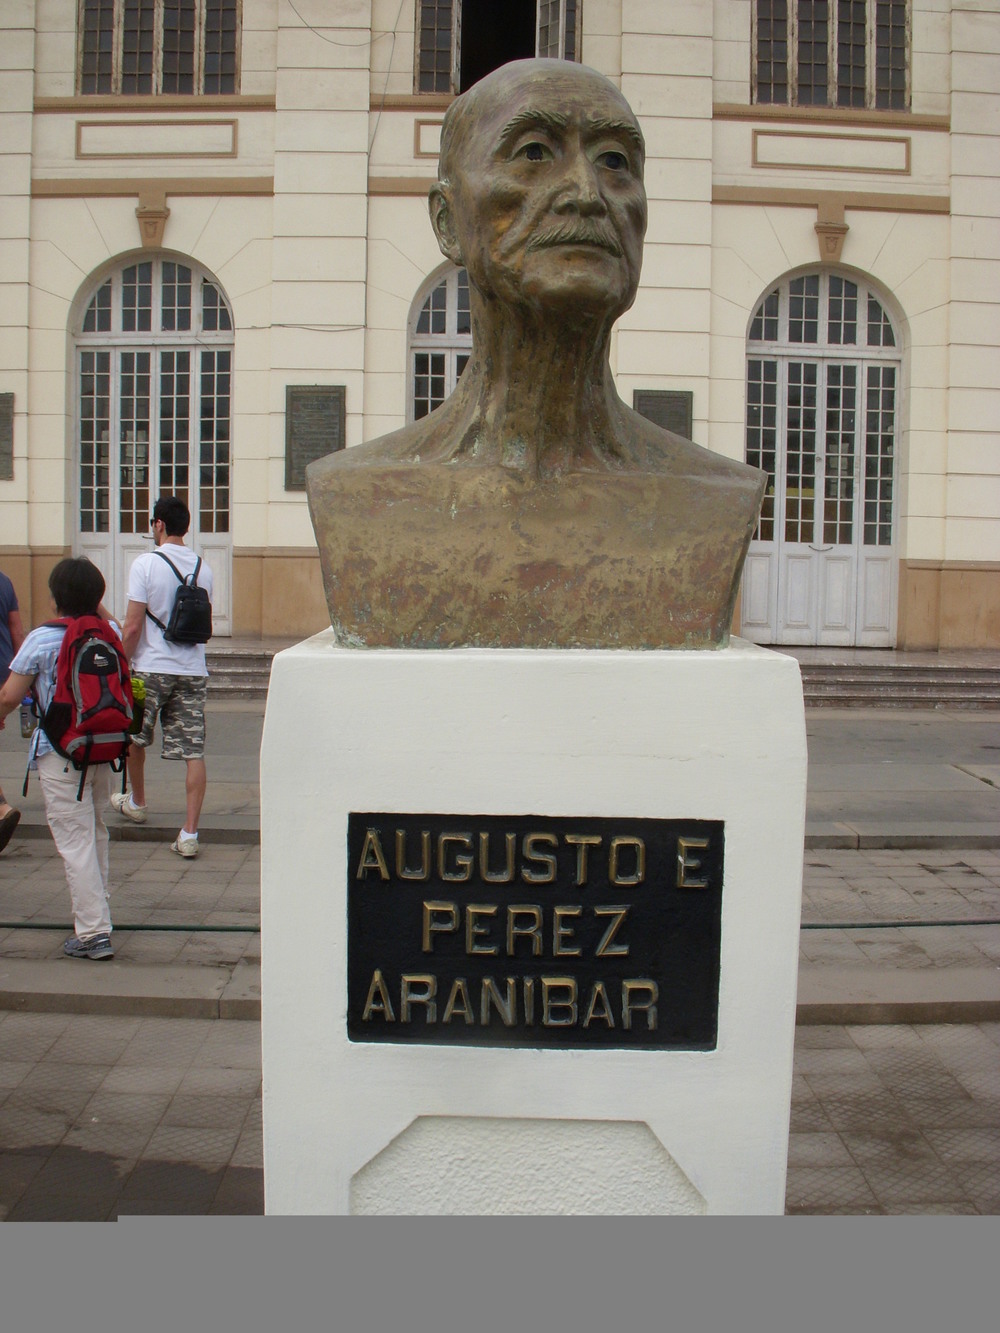  A statue commemorating Abusto E. Perez Aranibar, Creator of the PPA    